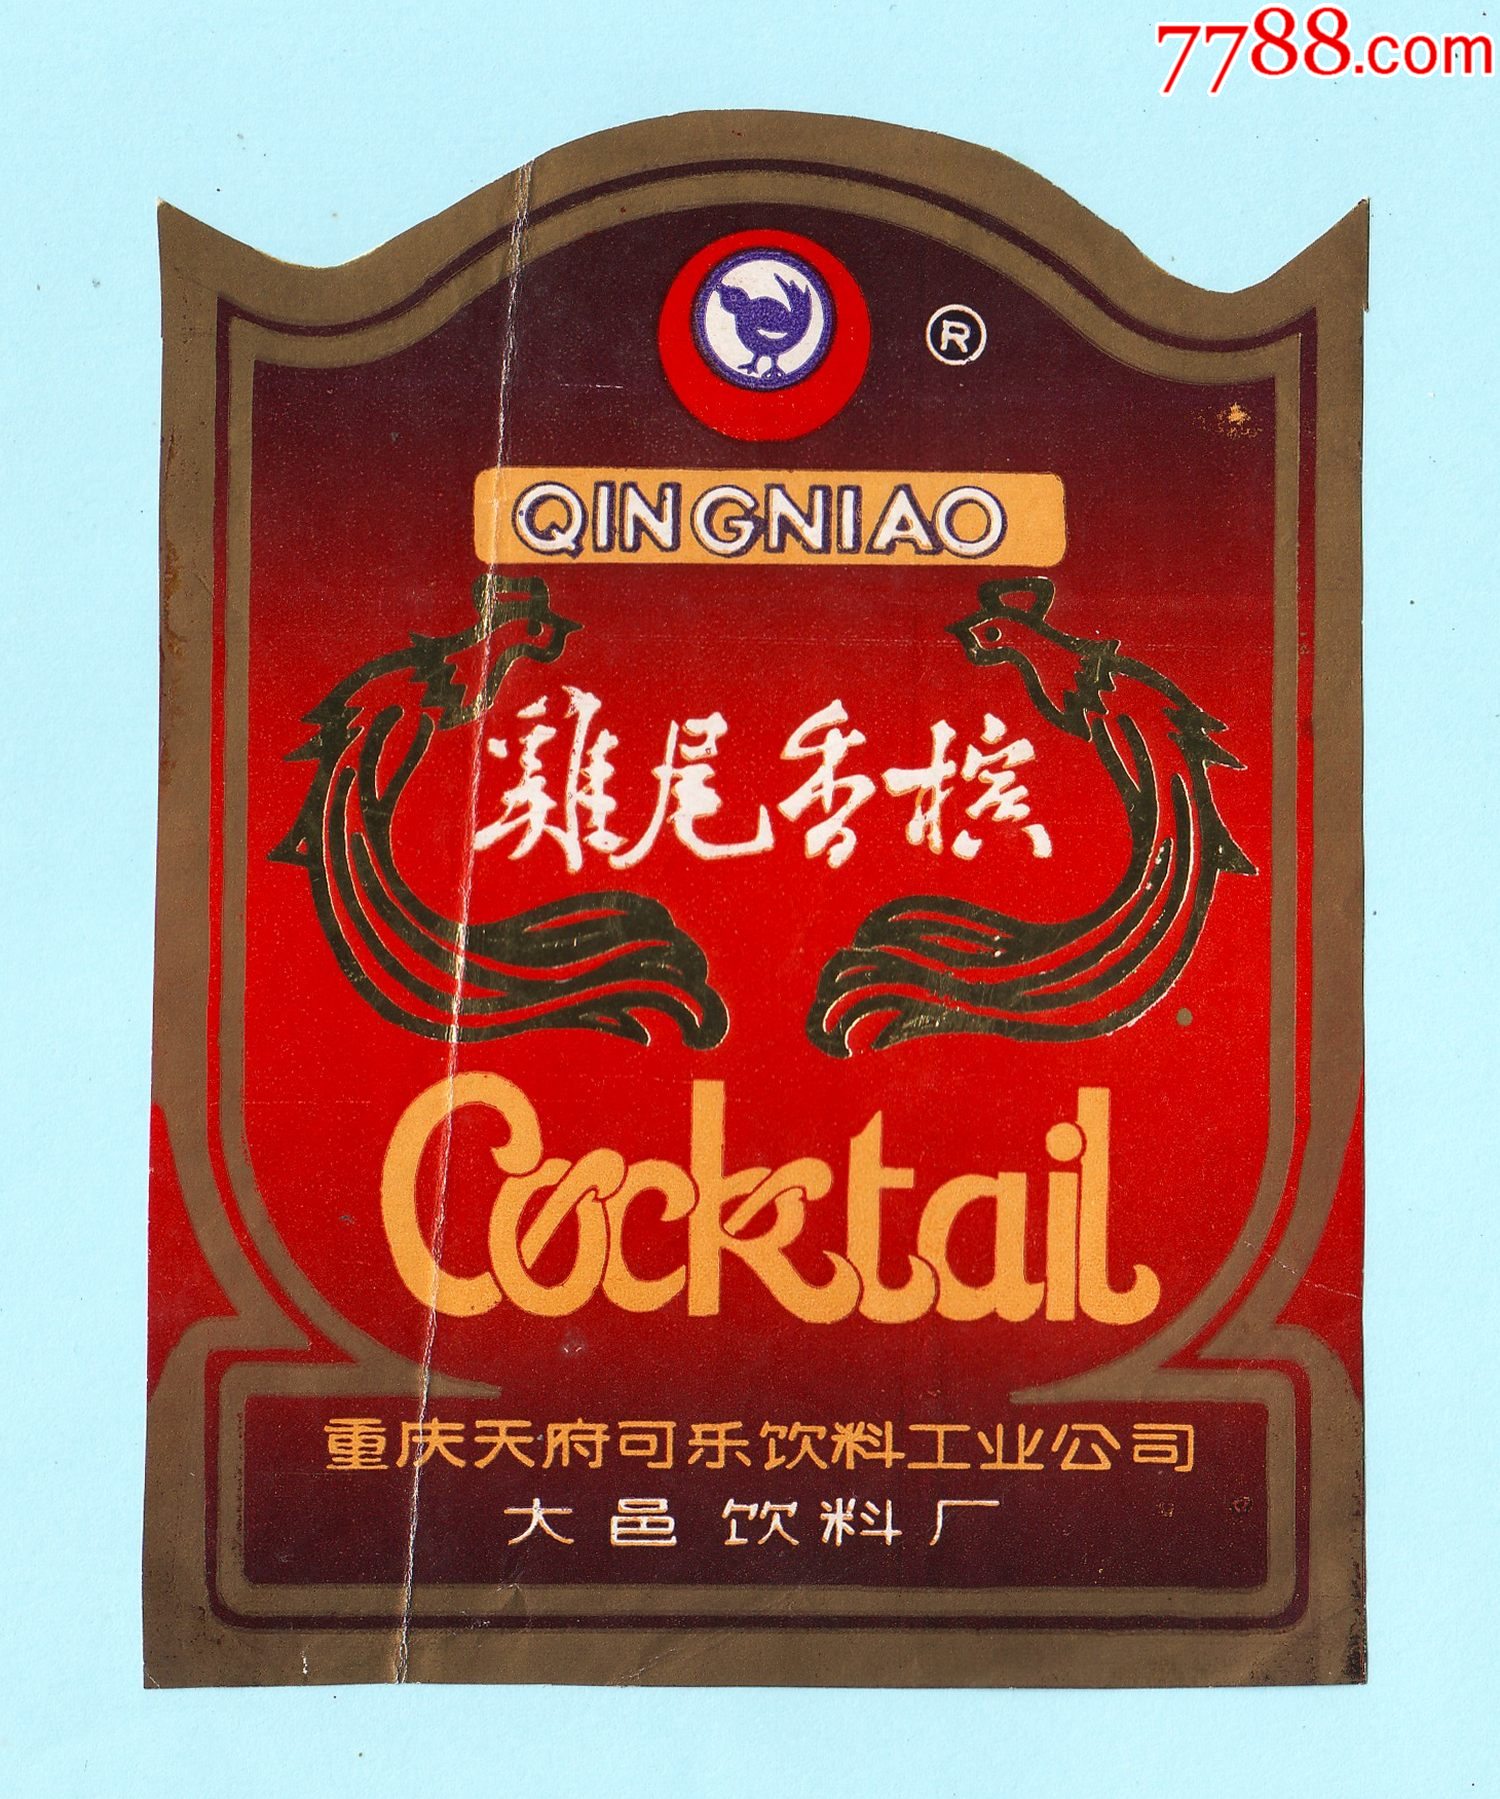 重庆酒标青鸟牌鸡尾香槟酒酒标重庆天府可乐饮料工业